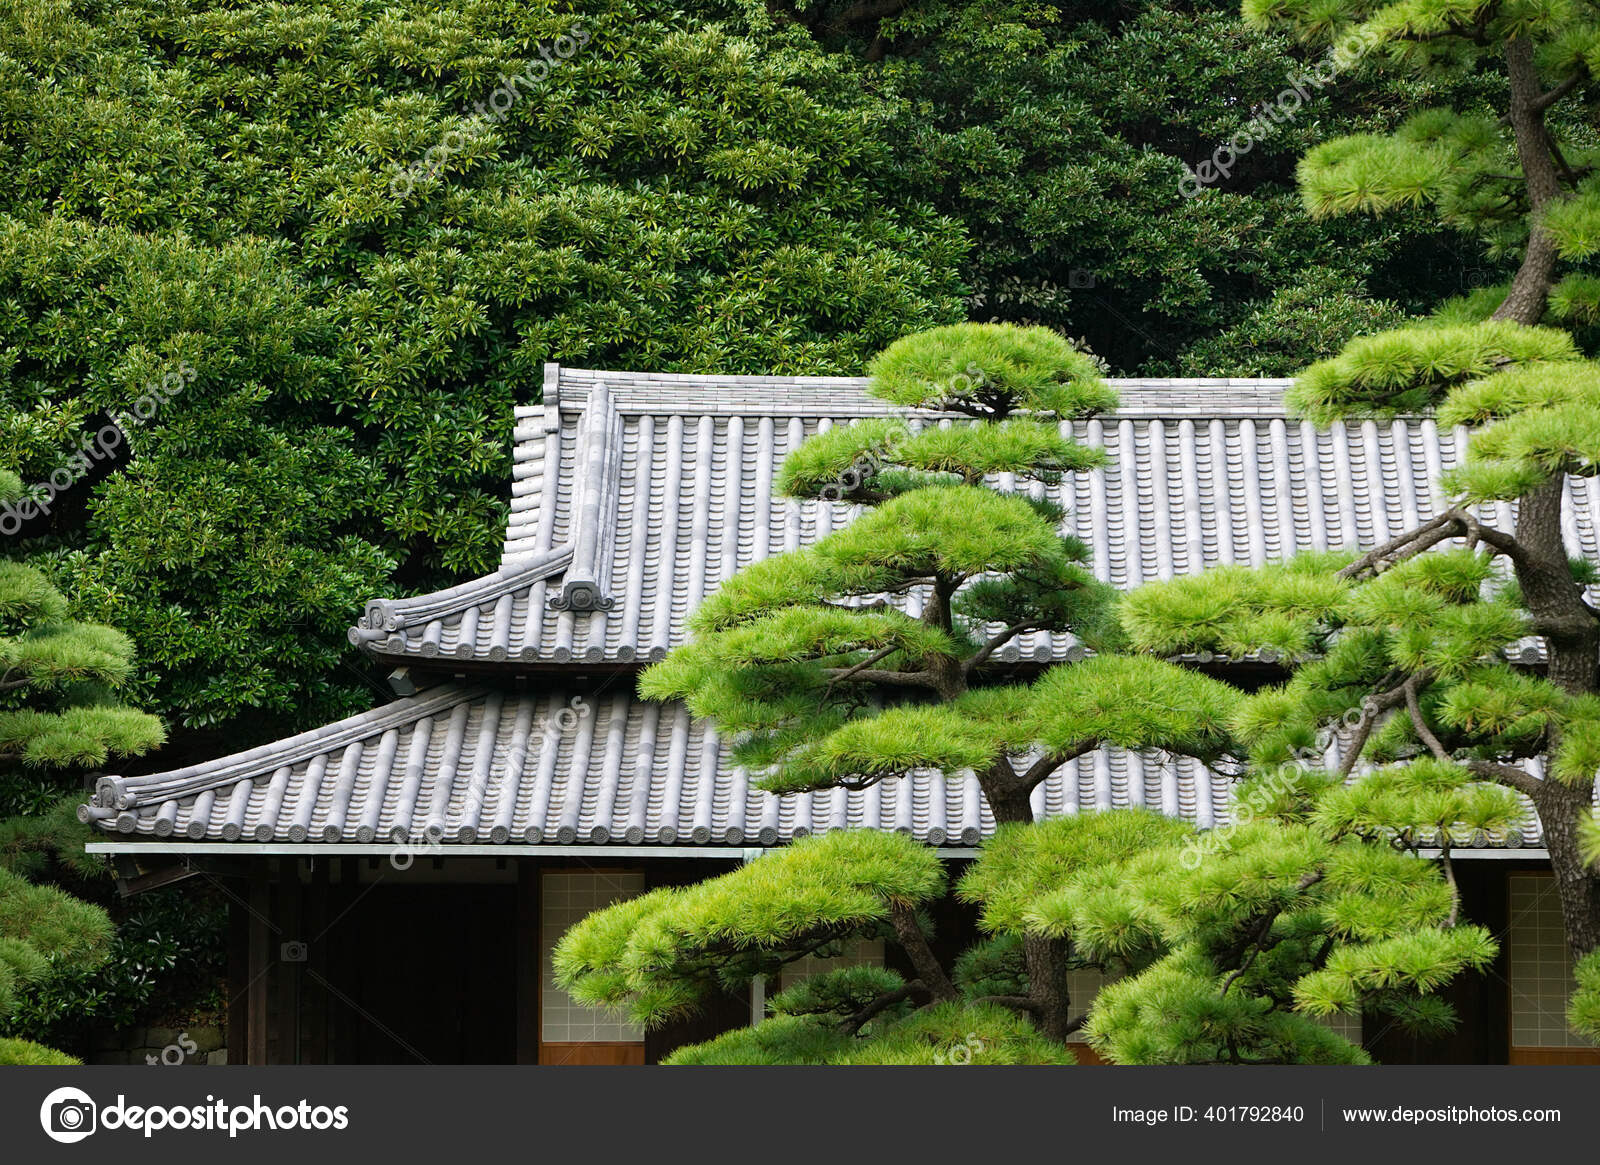 Rumah Tradisional Jepang Hutan Bambu Stok Foto Londondeposit 401792840